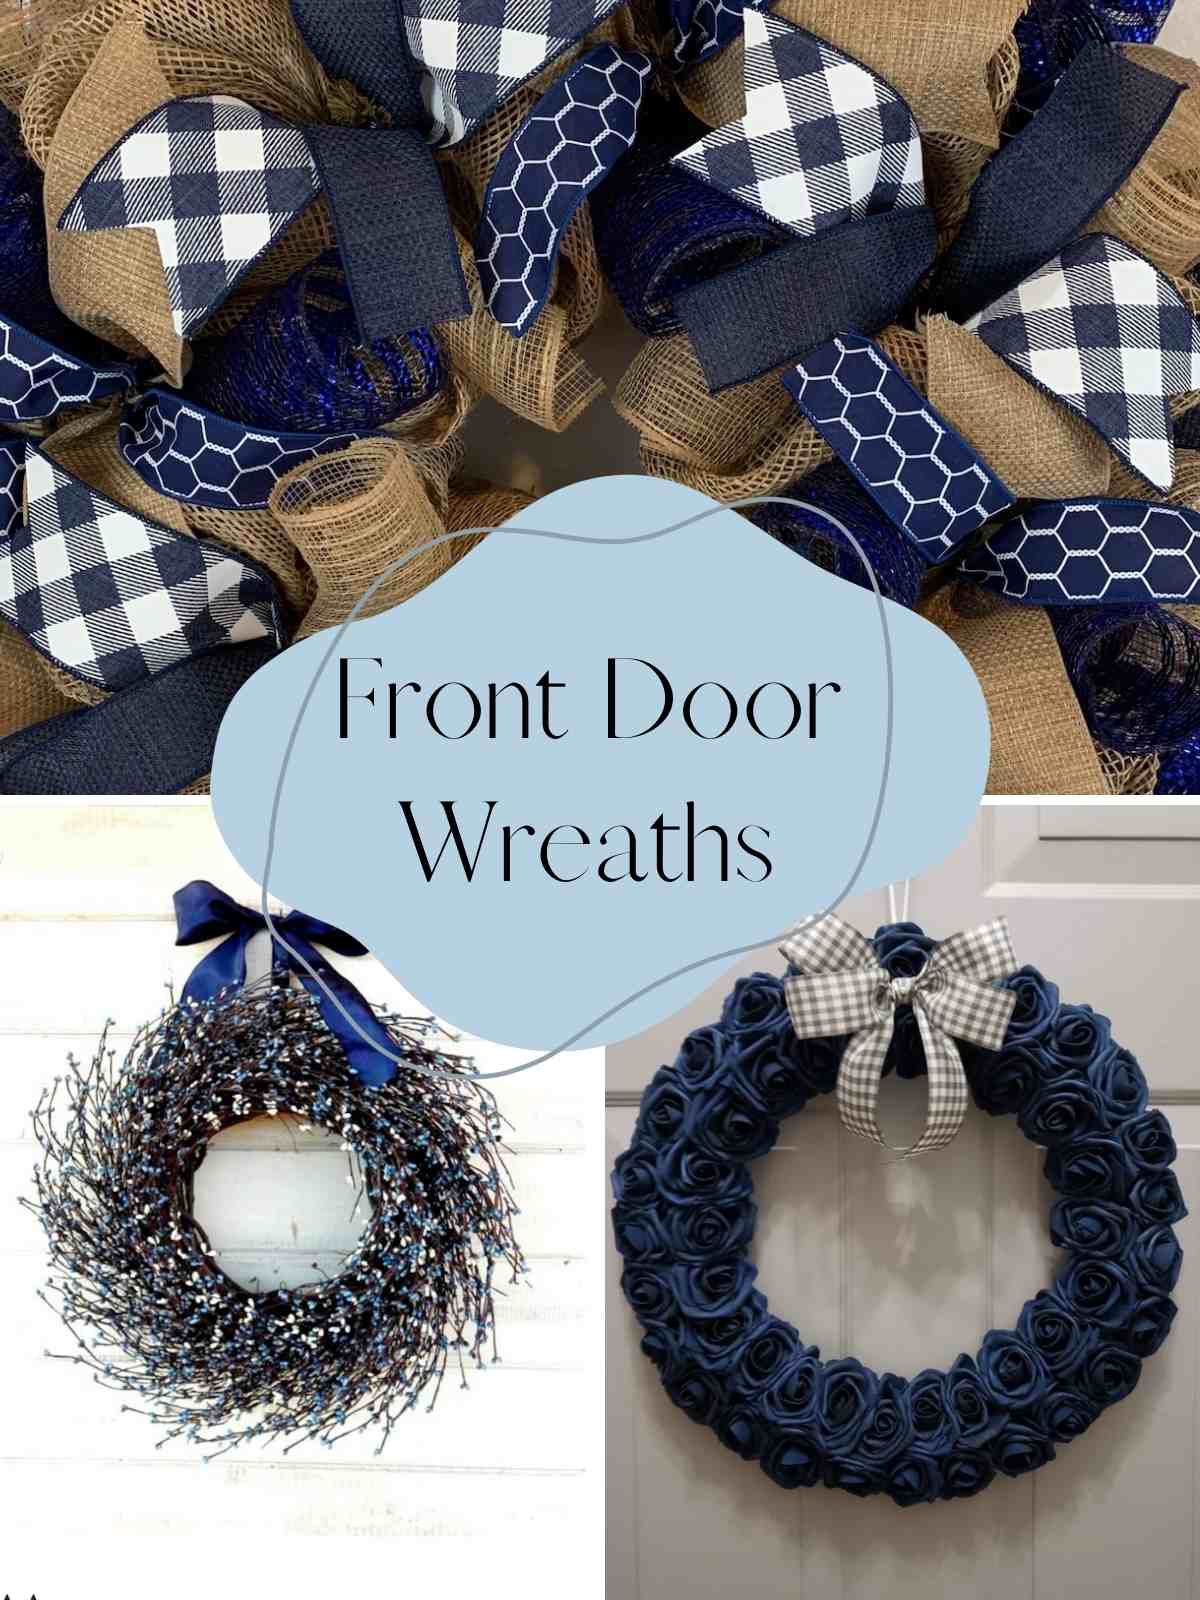 Front Door Wreath in navy